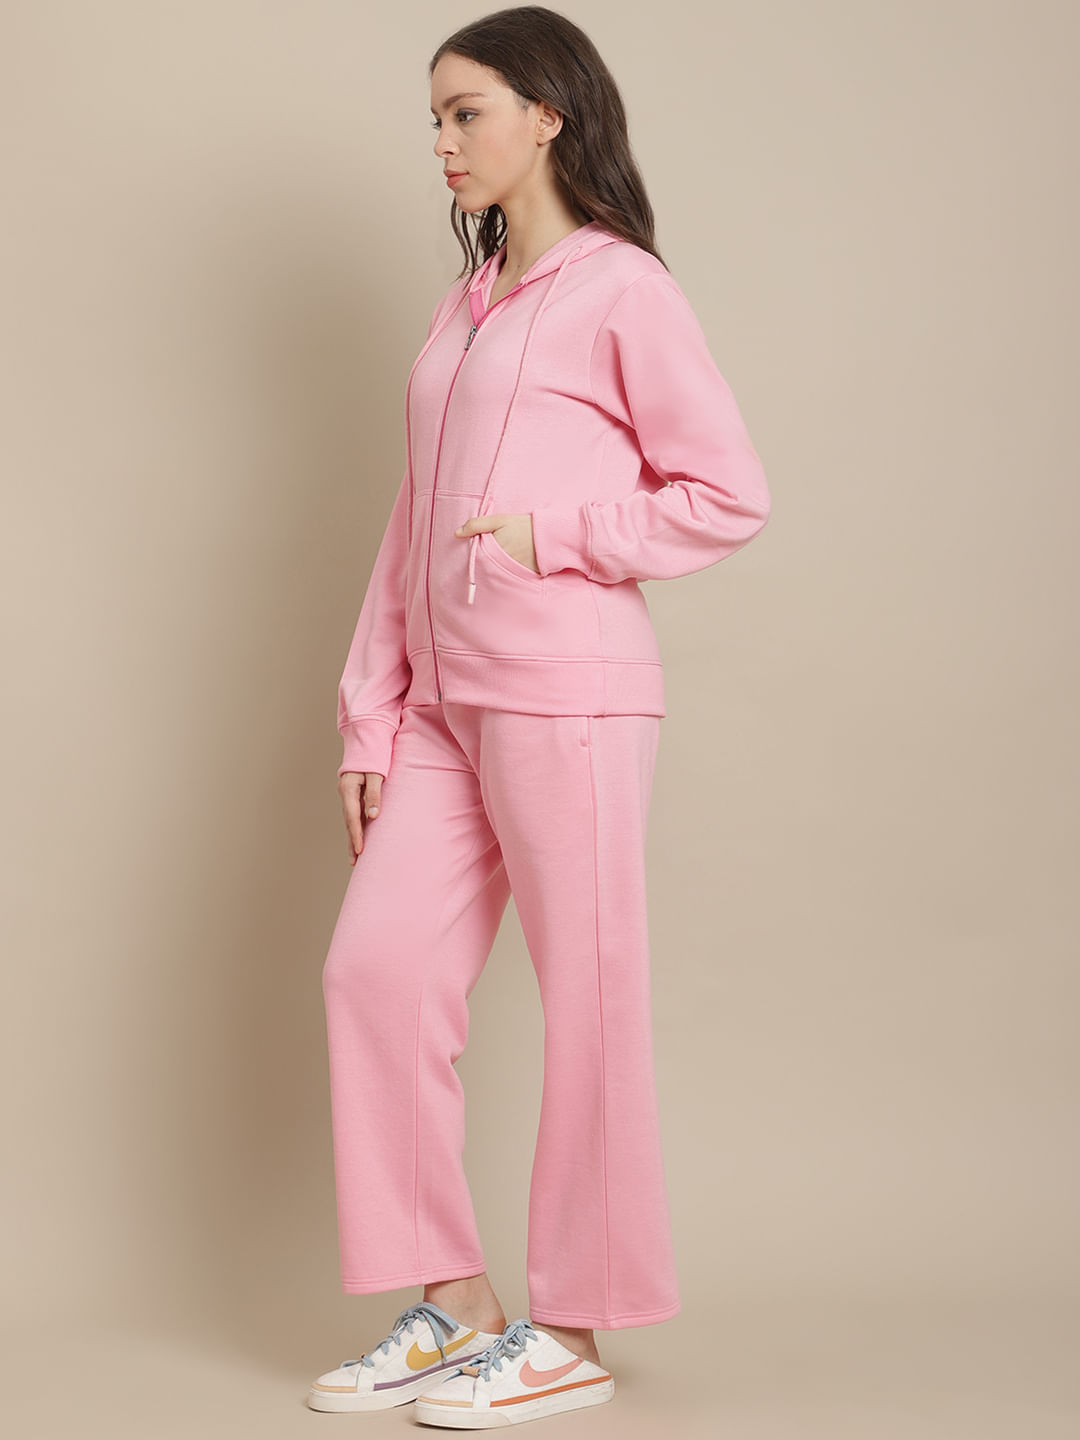  Fleece Baby Pink Winter Night Suit